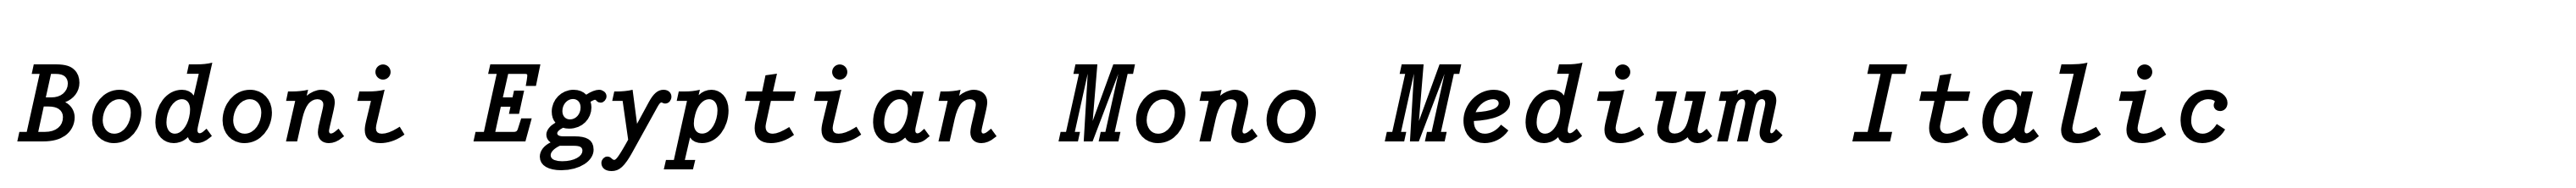 Bodoni Egyptian Mono Medium Italic